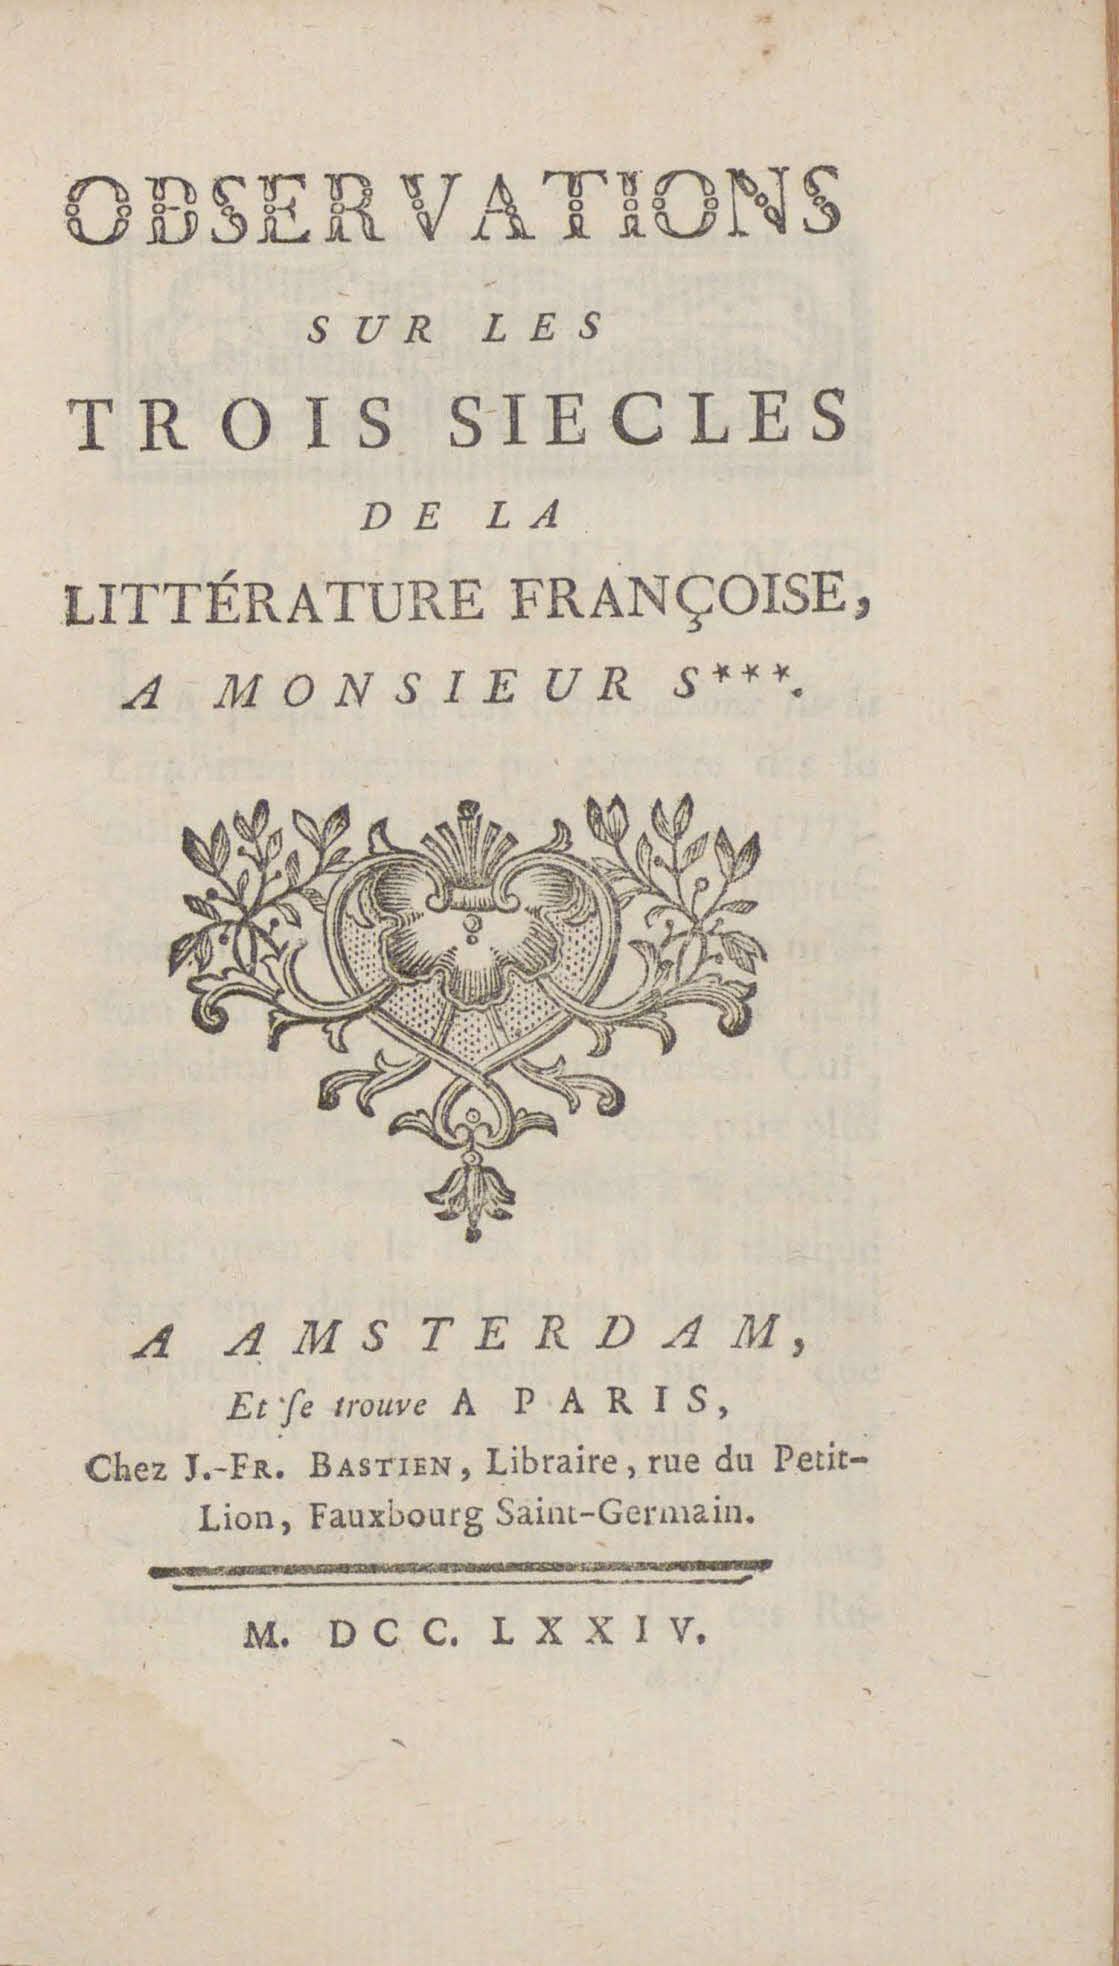 Observations sur Les trois siècles de la littérature françoise